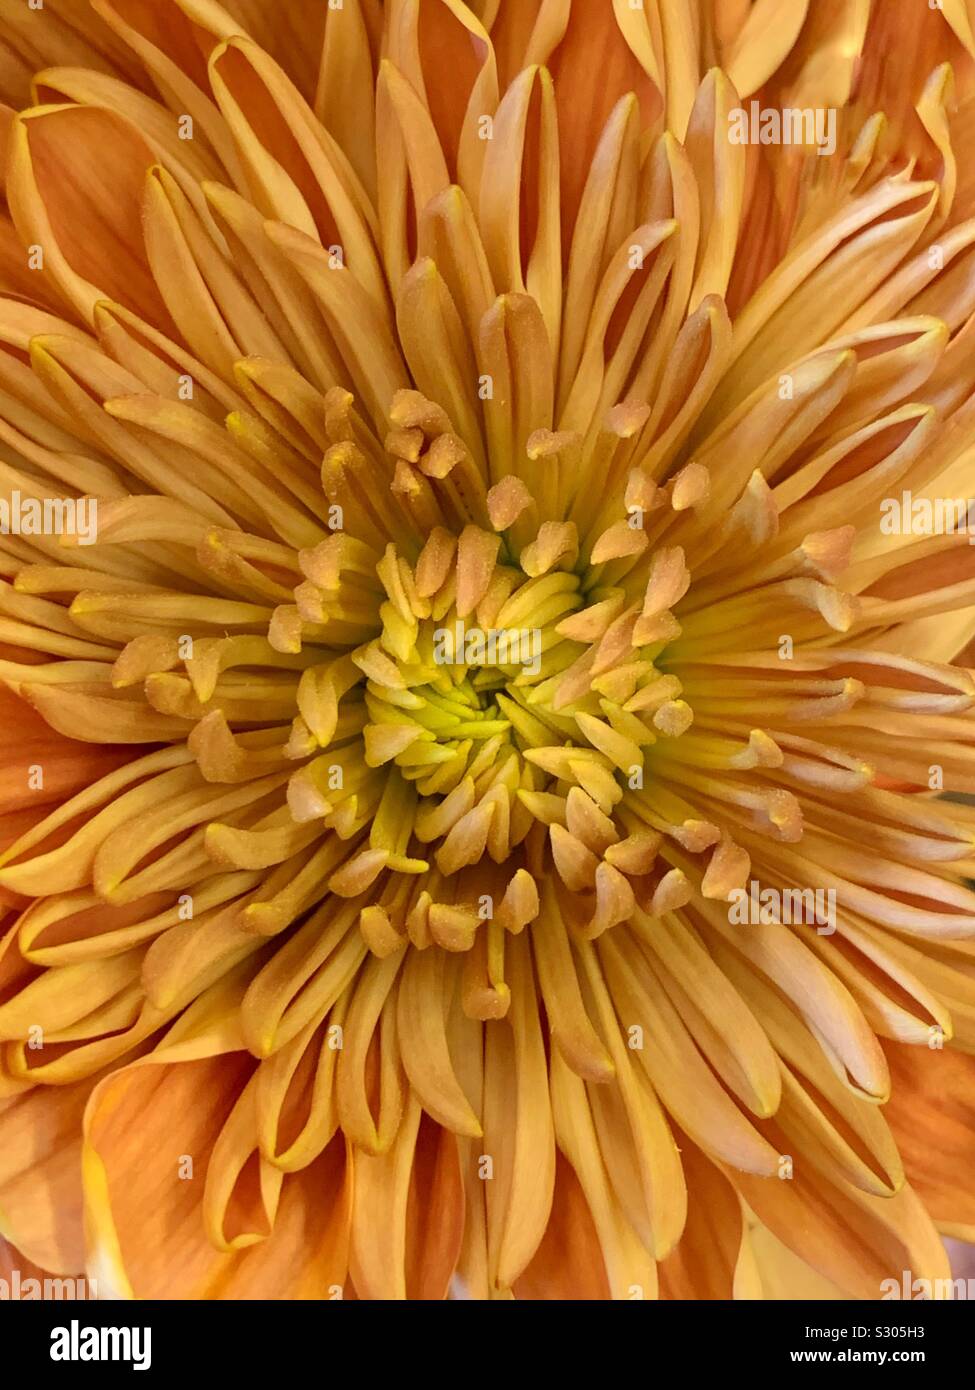 Beautiful fresh orange and yellow chrysanthemum blossom Stock Photo